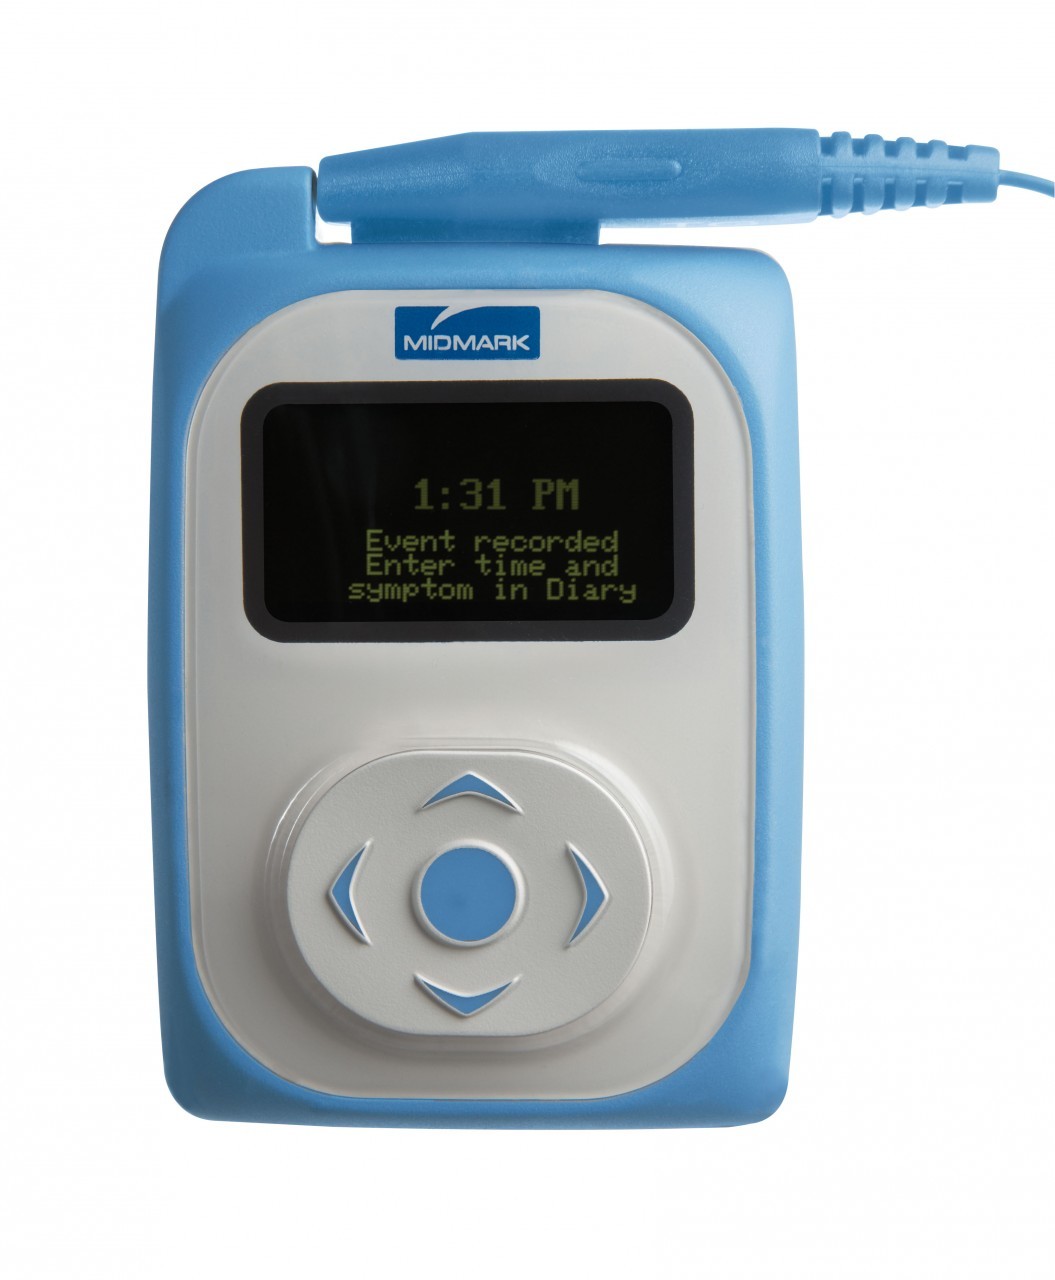 参比制剂,进口原料药,医药原料药 Midmark Iqholter # 4-000-0116 - IQholter EP Digital Holter with Pacemaker Detection & Recorder, No Software, Each